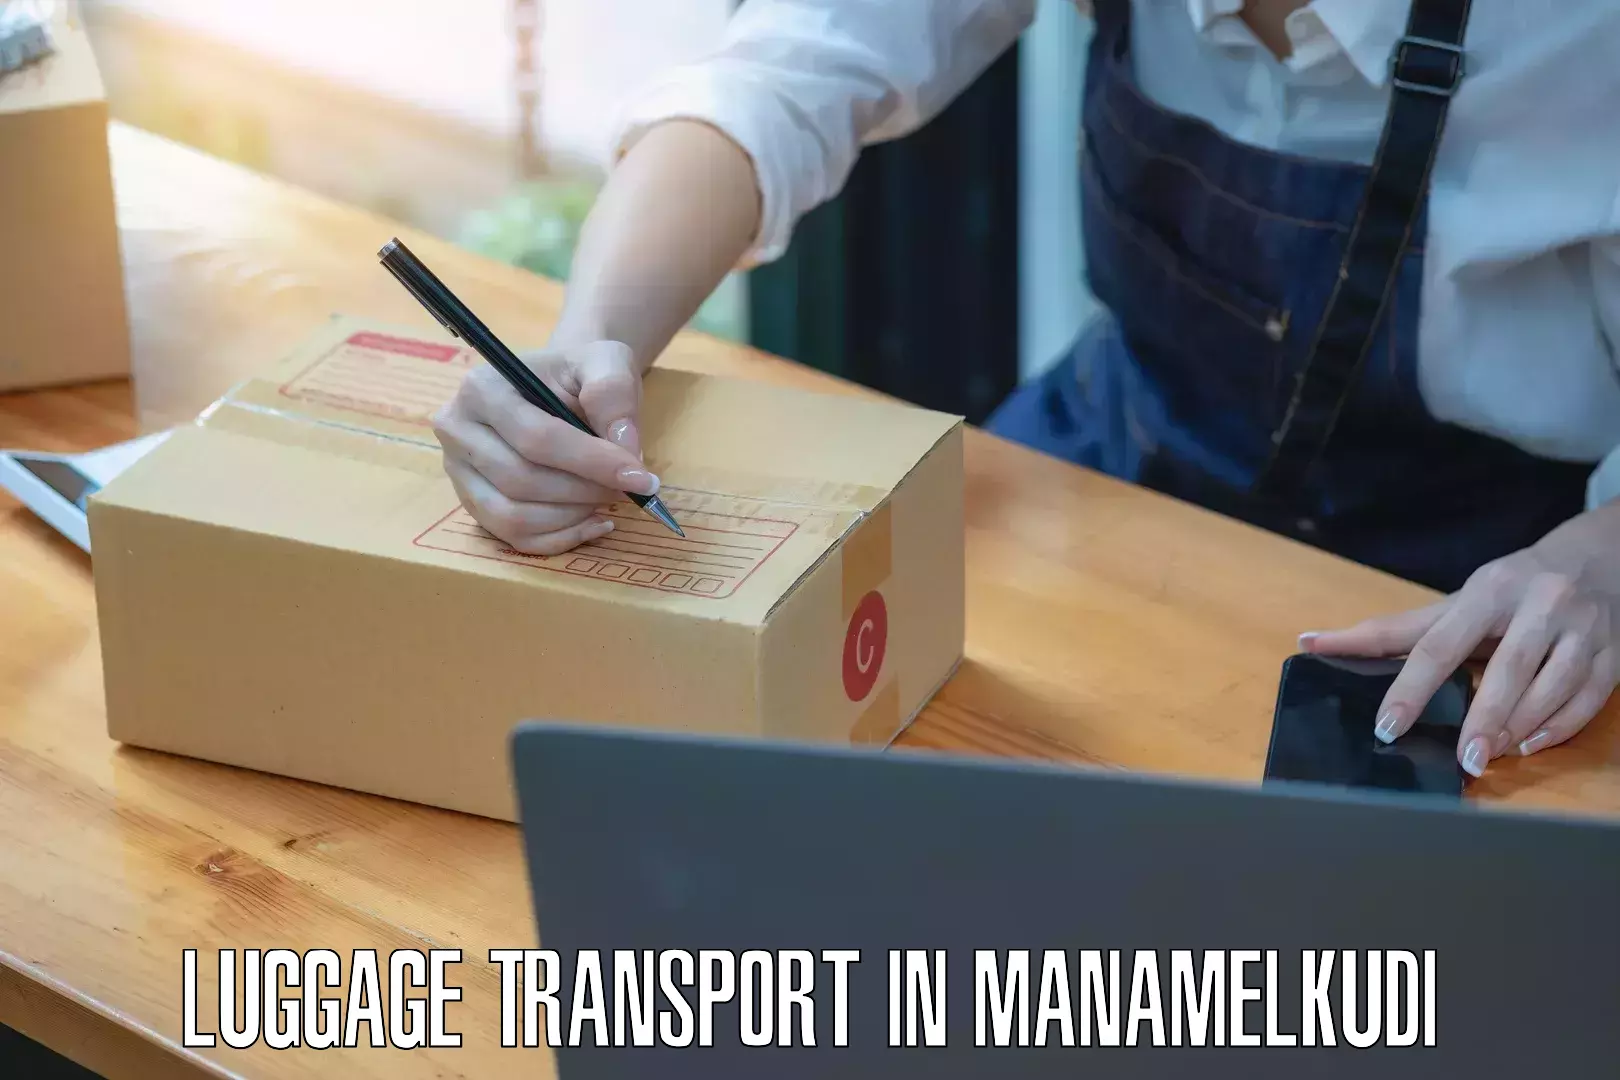 Excess baggage transport in Manamelkudi